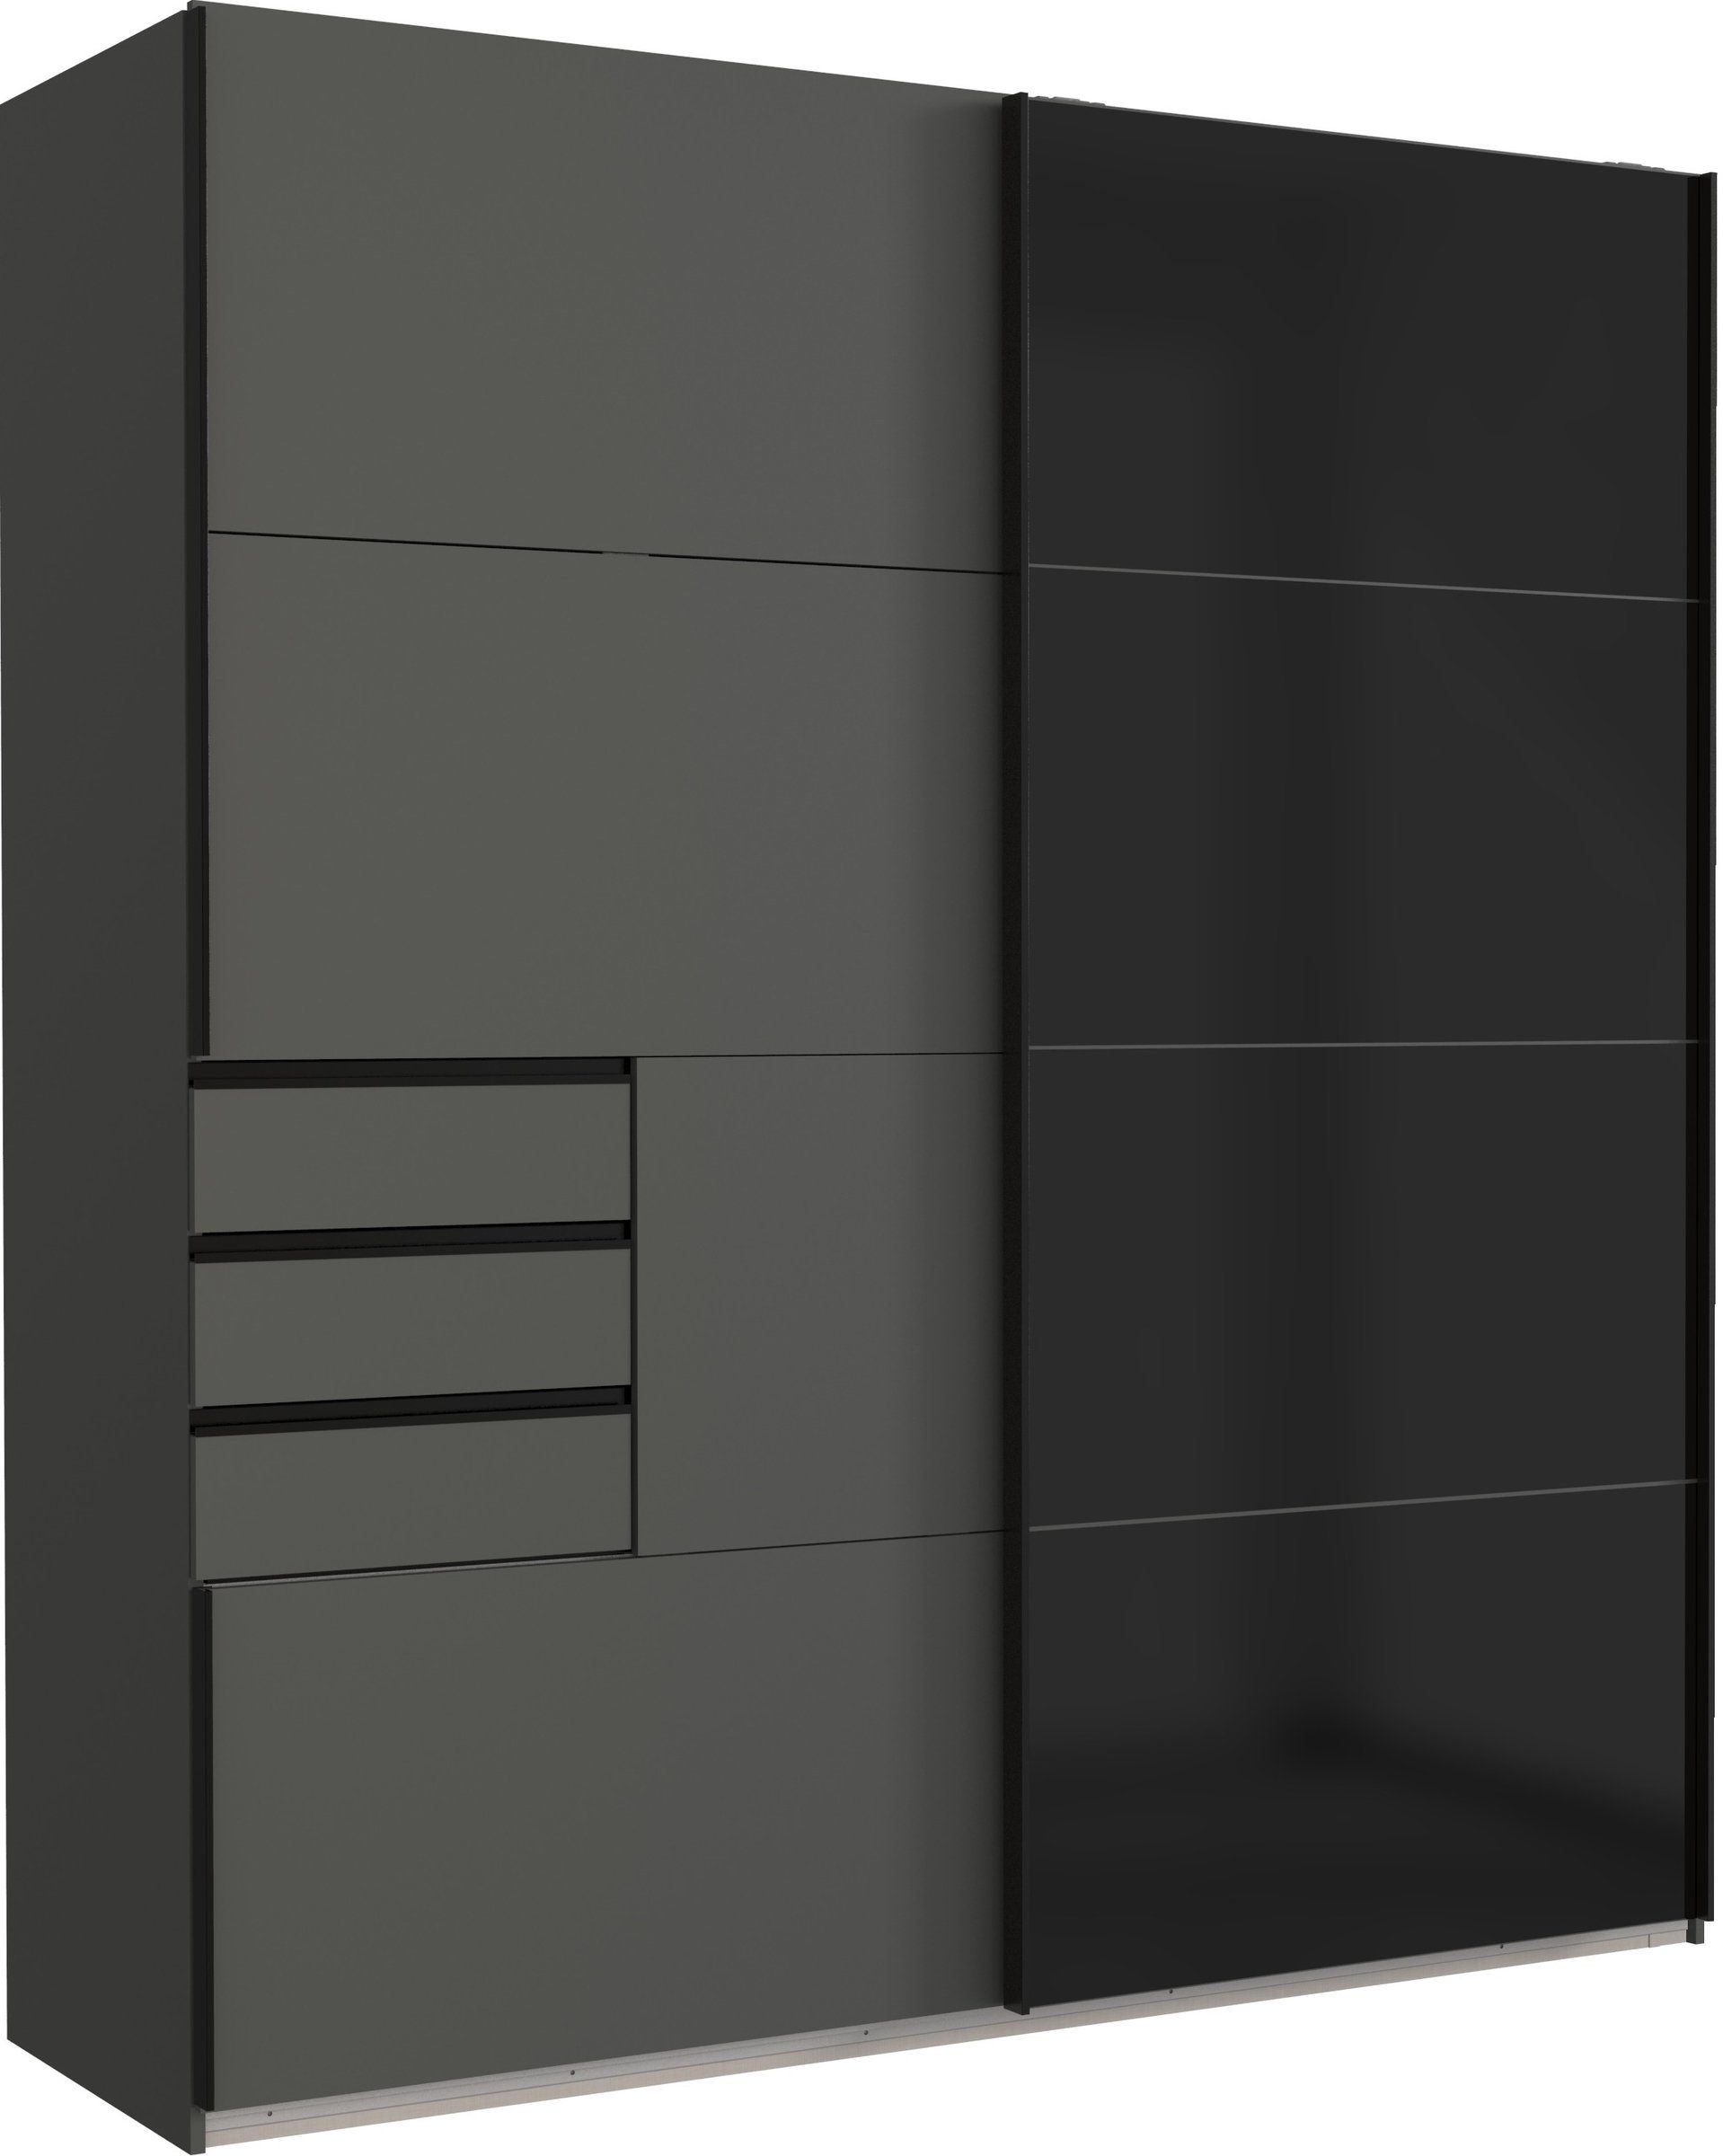 freiraum Schwebetürenschrank Barcelona (BxH: 225x208 cm) in GRPAHIT + GLAS SCHWARZ mit 3 Schubladen und 2 Türen